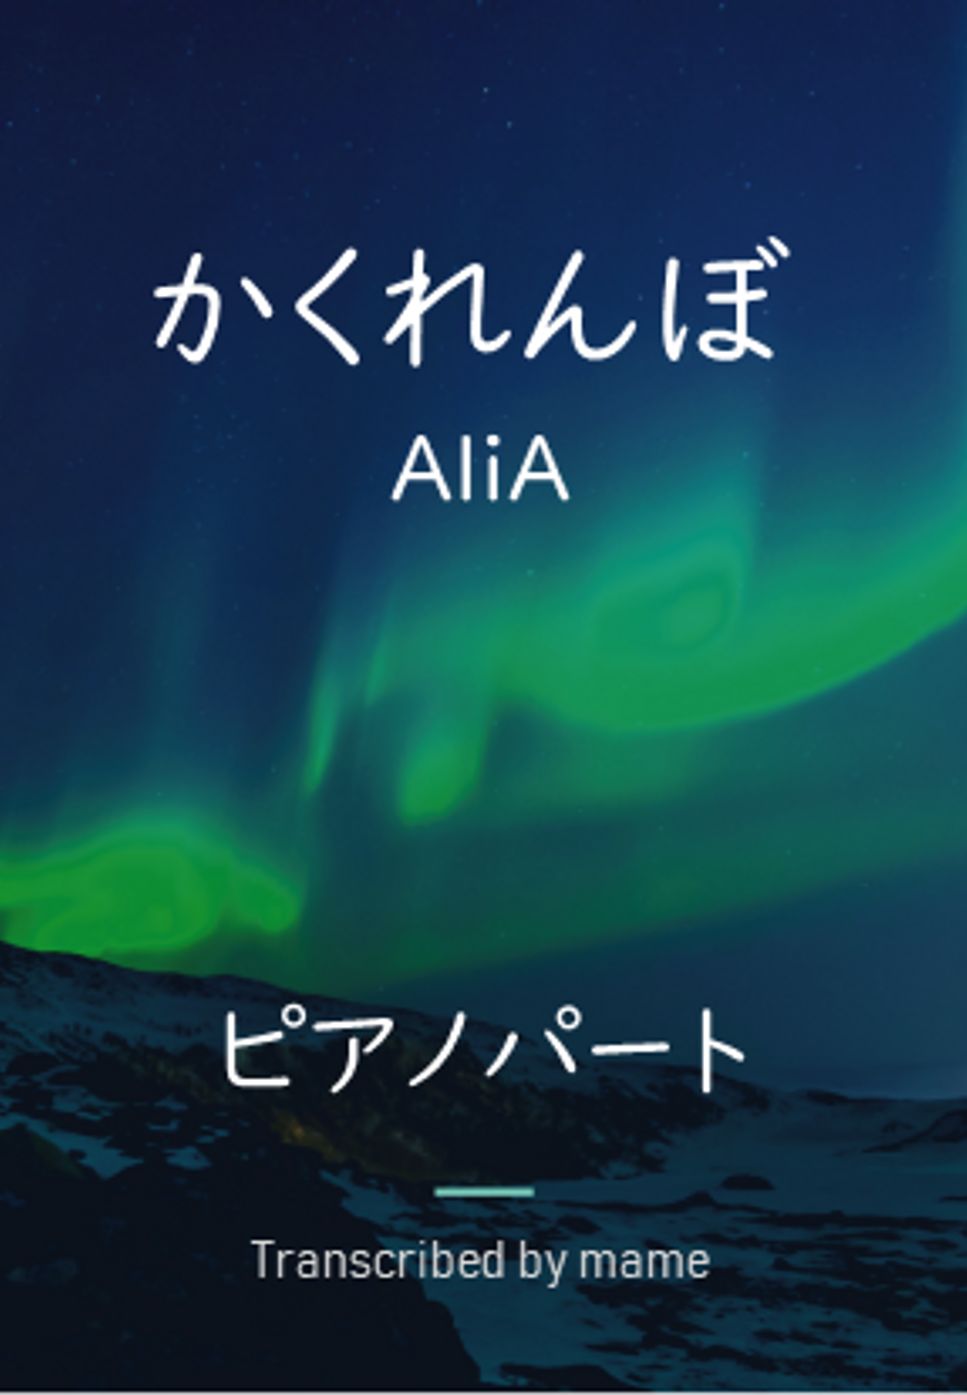 AliA - かくれんぼ (ピアノパート) by mame